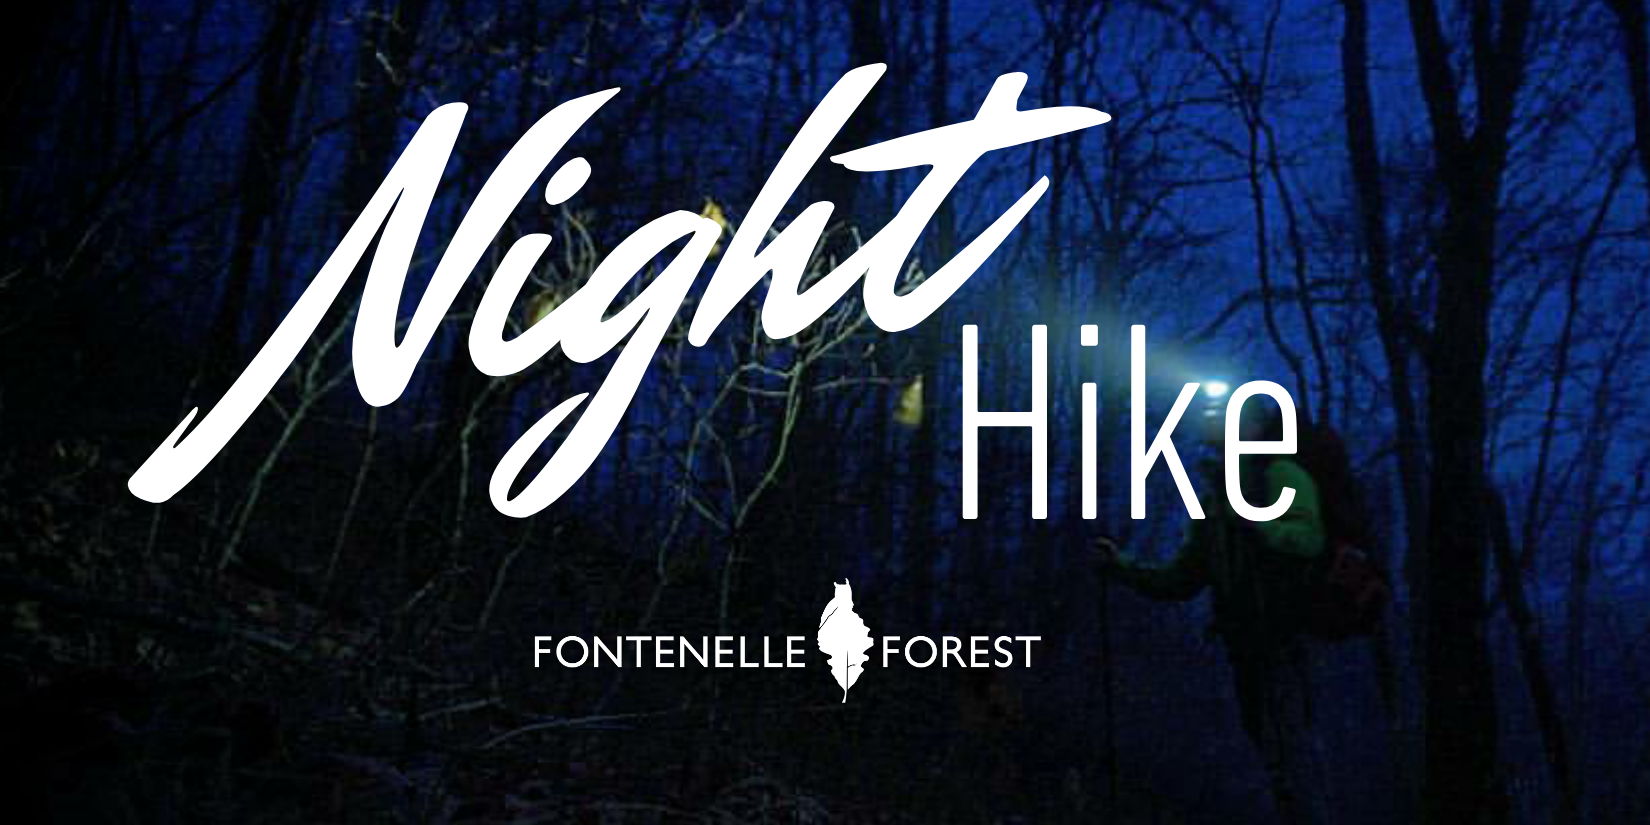 Night Hike promotional image